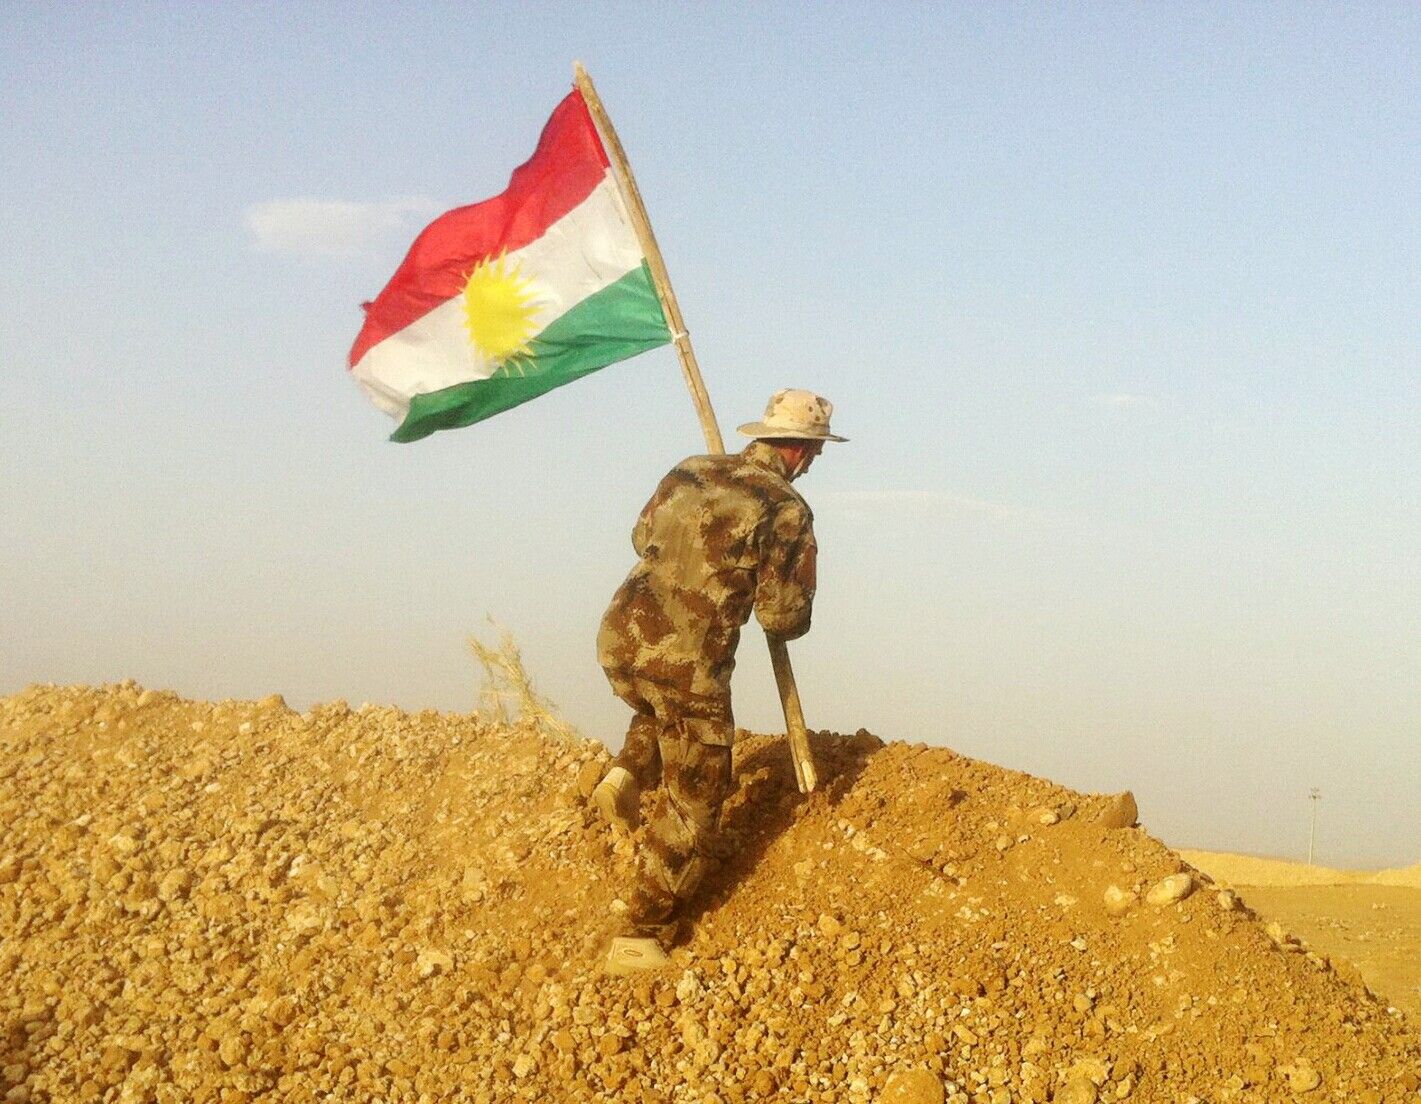 Image courtesy of Flickr user Kurdishstruggle. Iraq, 2015.